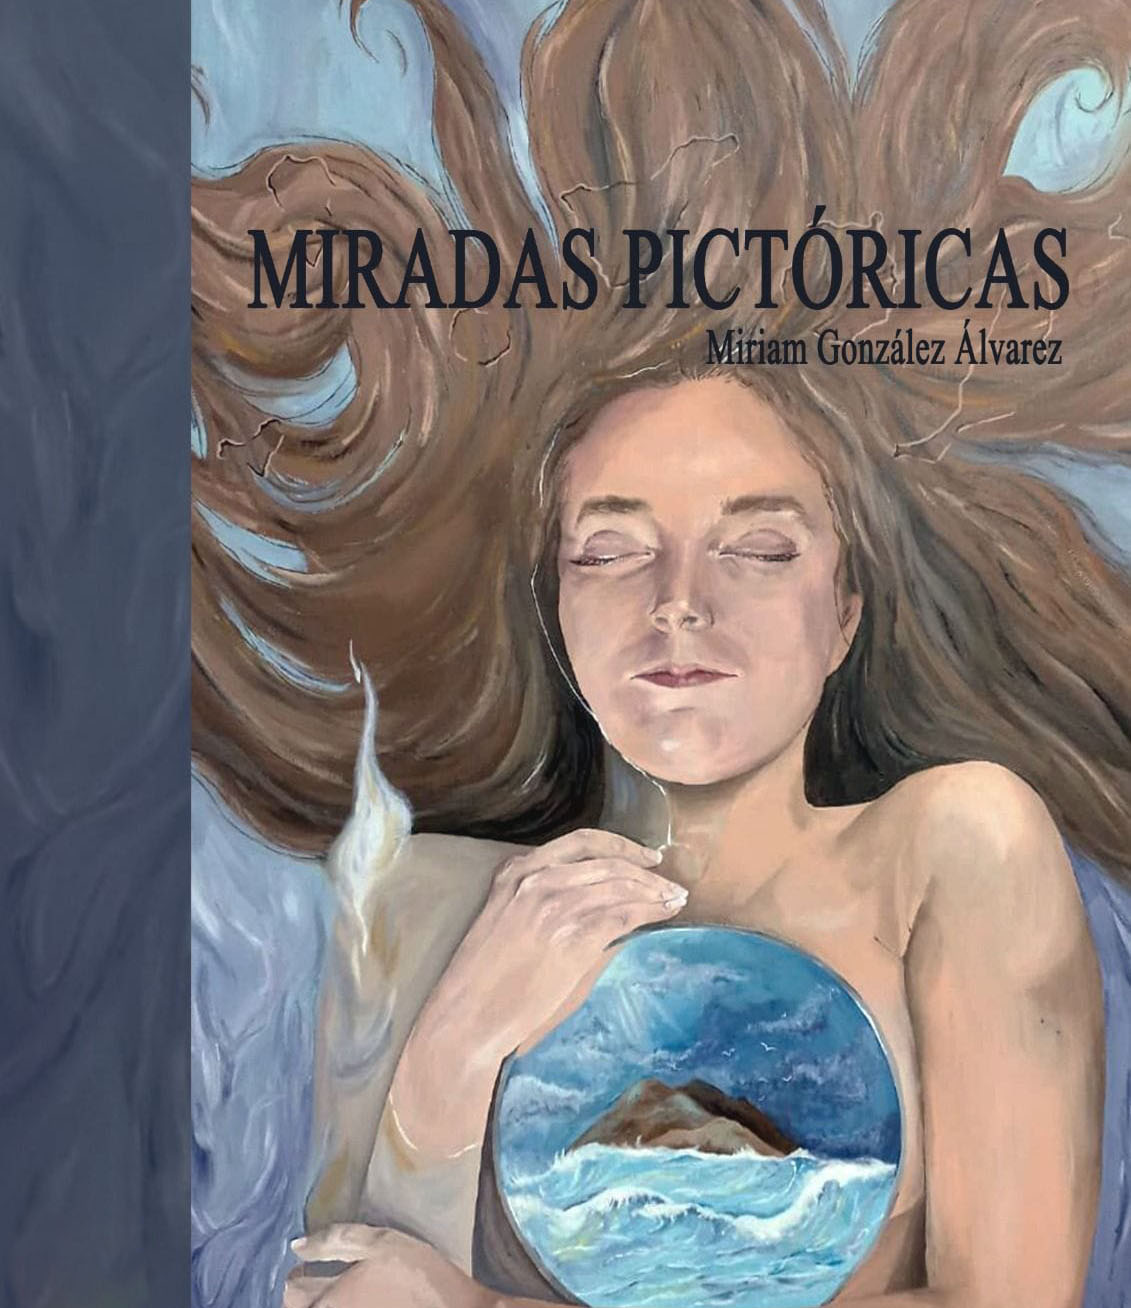 Exposición “Miradas Pictóricas” de Miriam González Álvarez